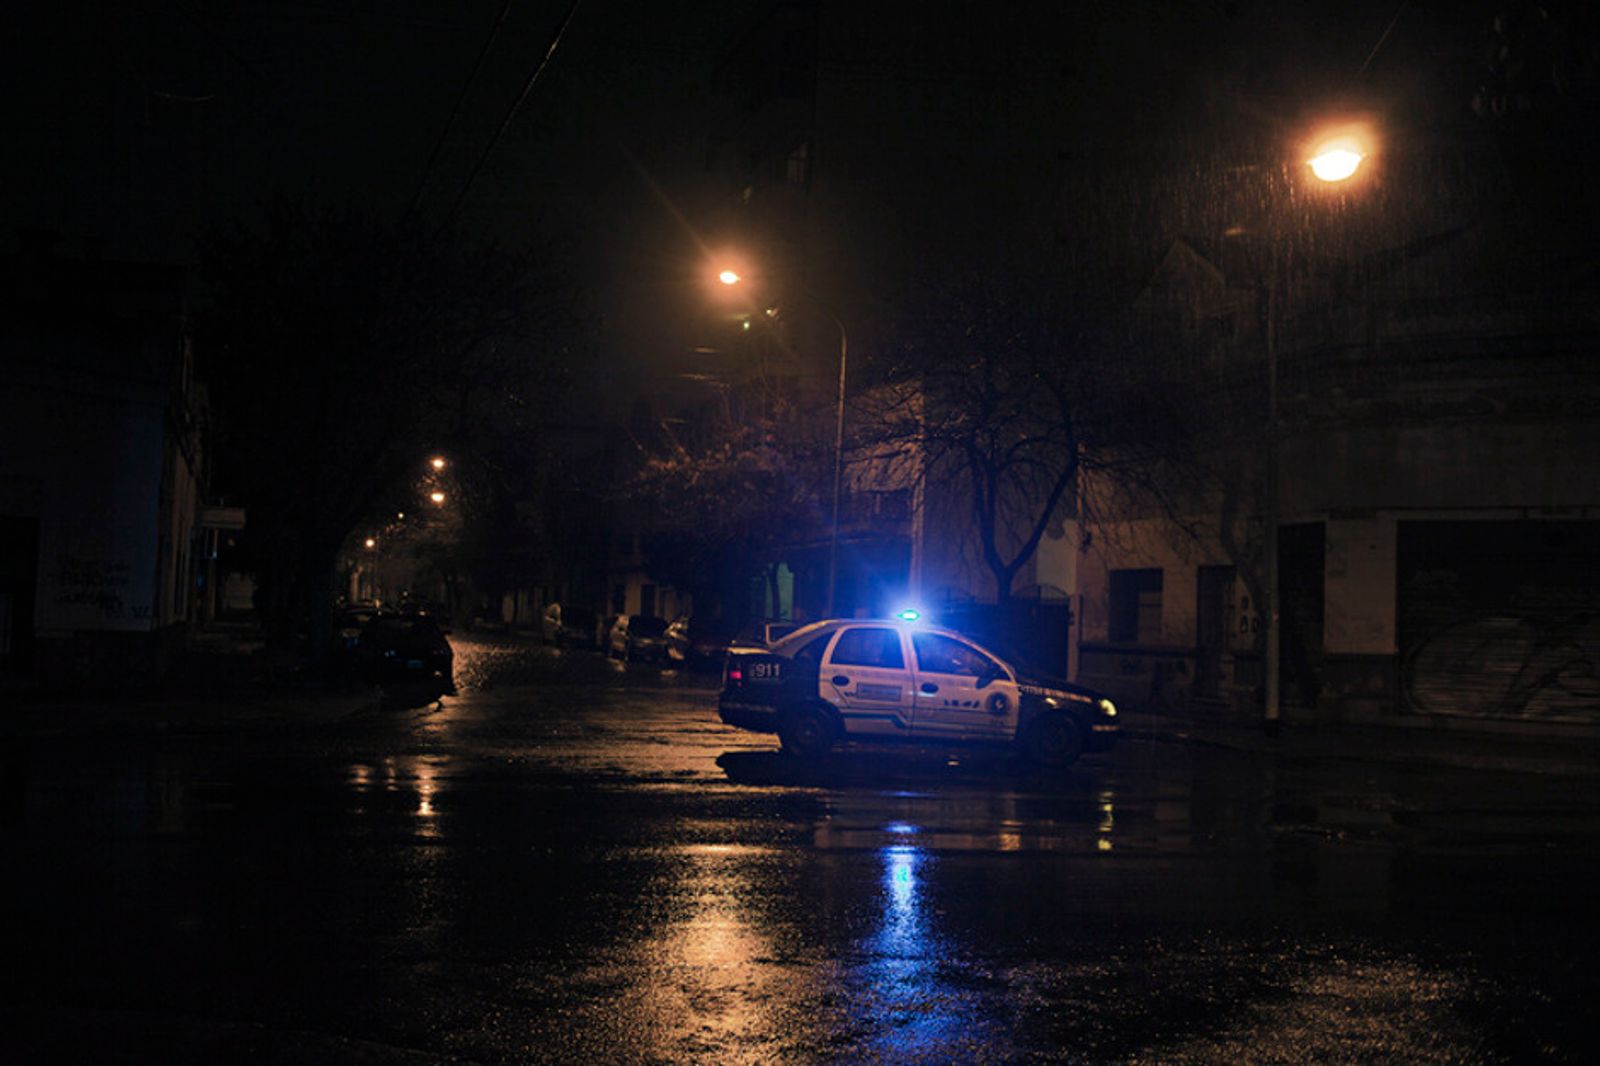 © Myriam Meloni - A police car during a night patrol.